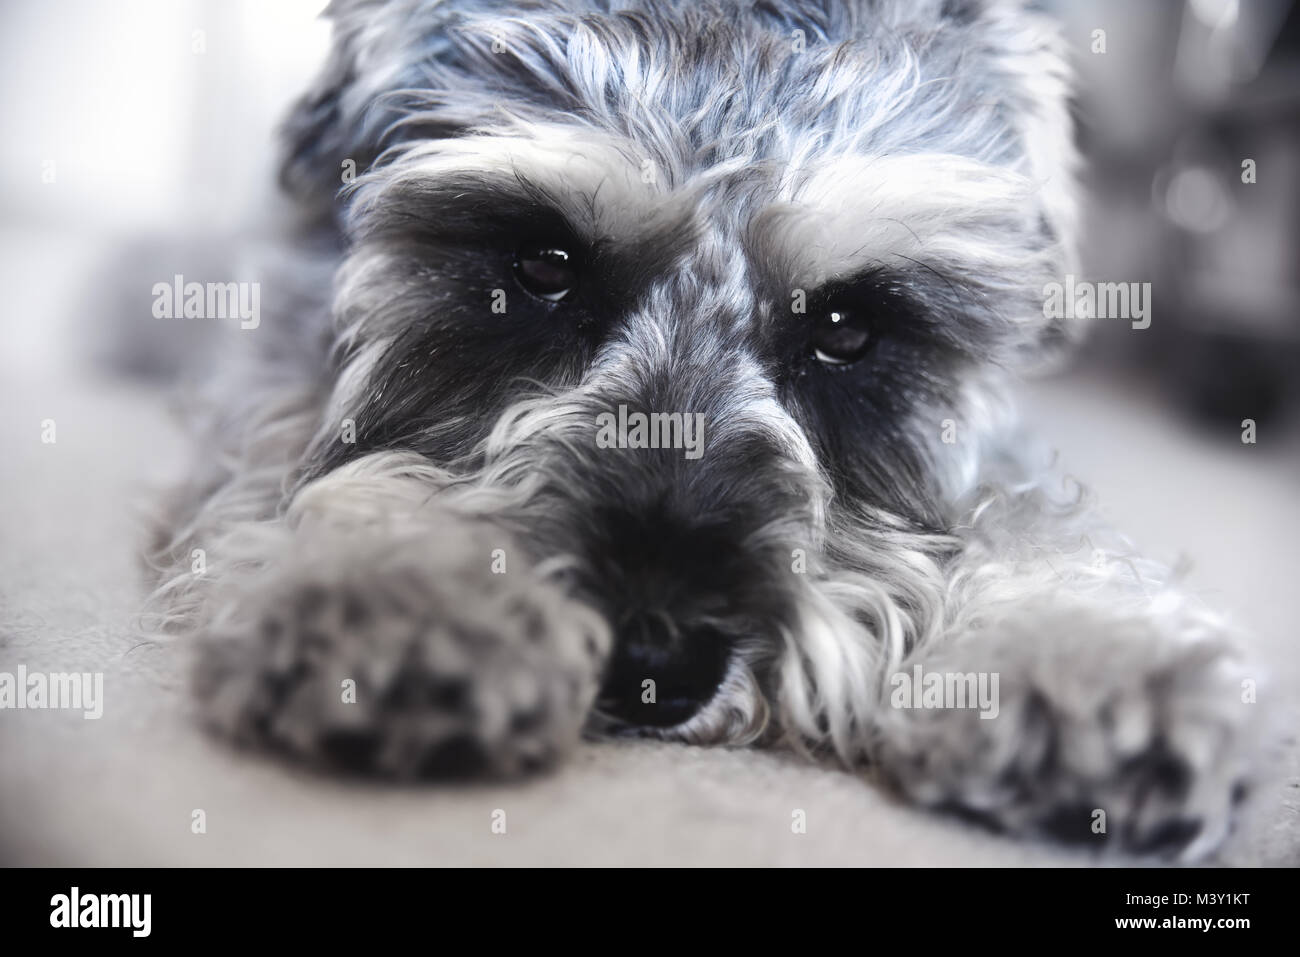 Cucciolo schnauzer miniatura giace sul pavimento, funny dog Foto Stock